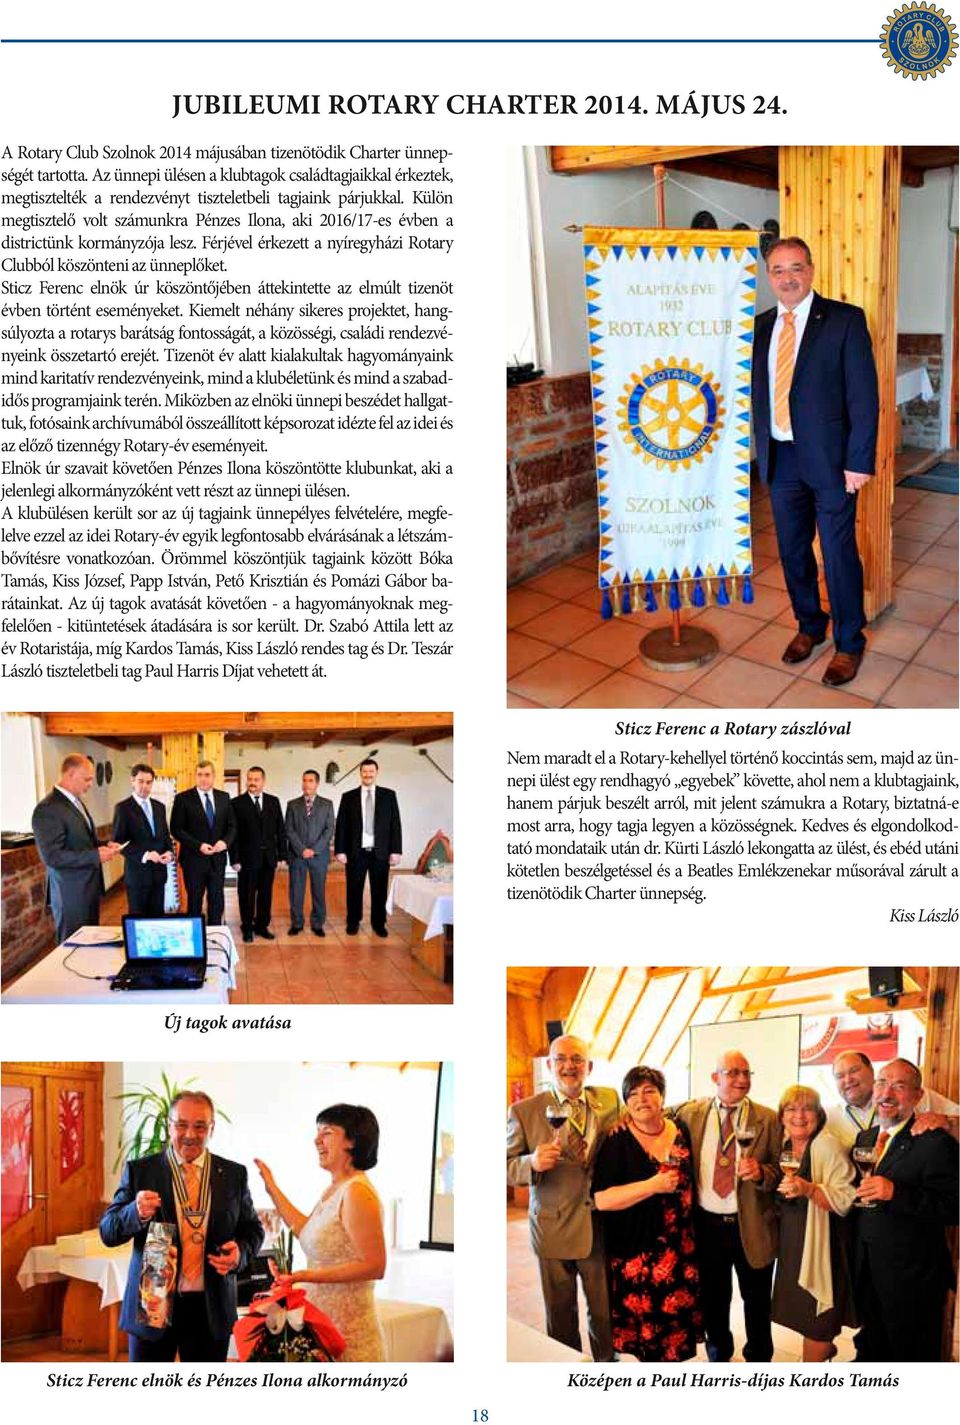 Külön megtisztelő volt számunkra Pénzes Ilona, aki 2016/17-es évben a districtünk kormányzója lesz. Férjével érkezett a nyíregyházi Rotary Clubból köszönteni az ünneplőket.